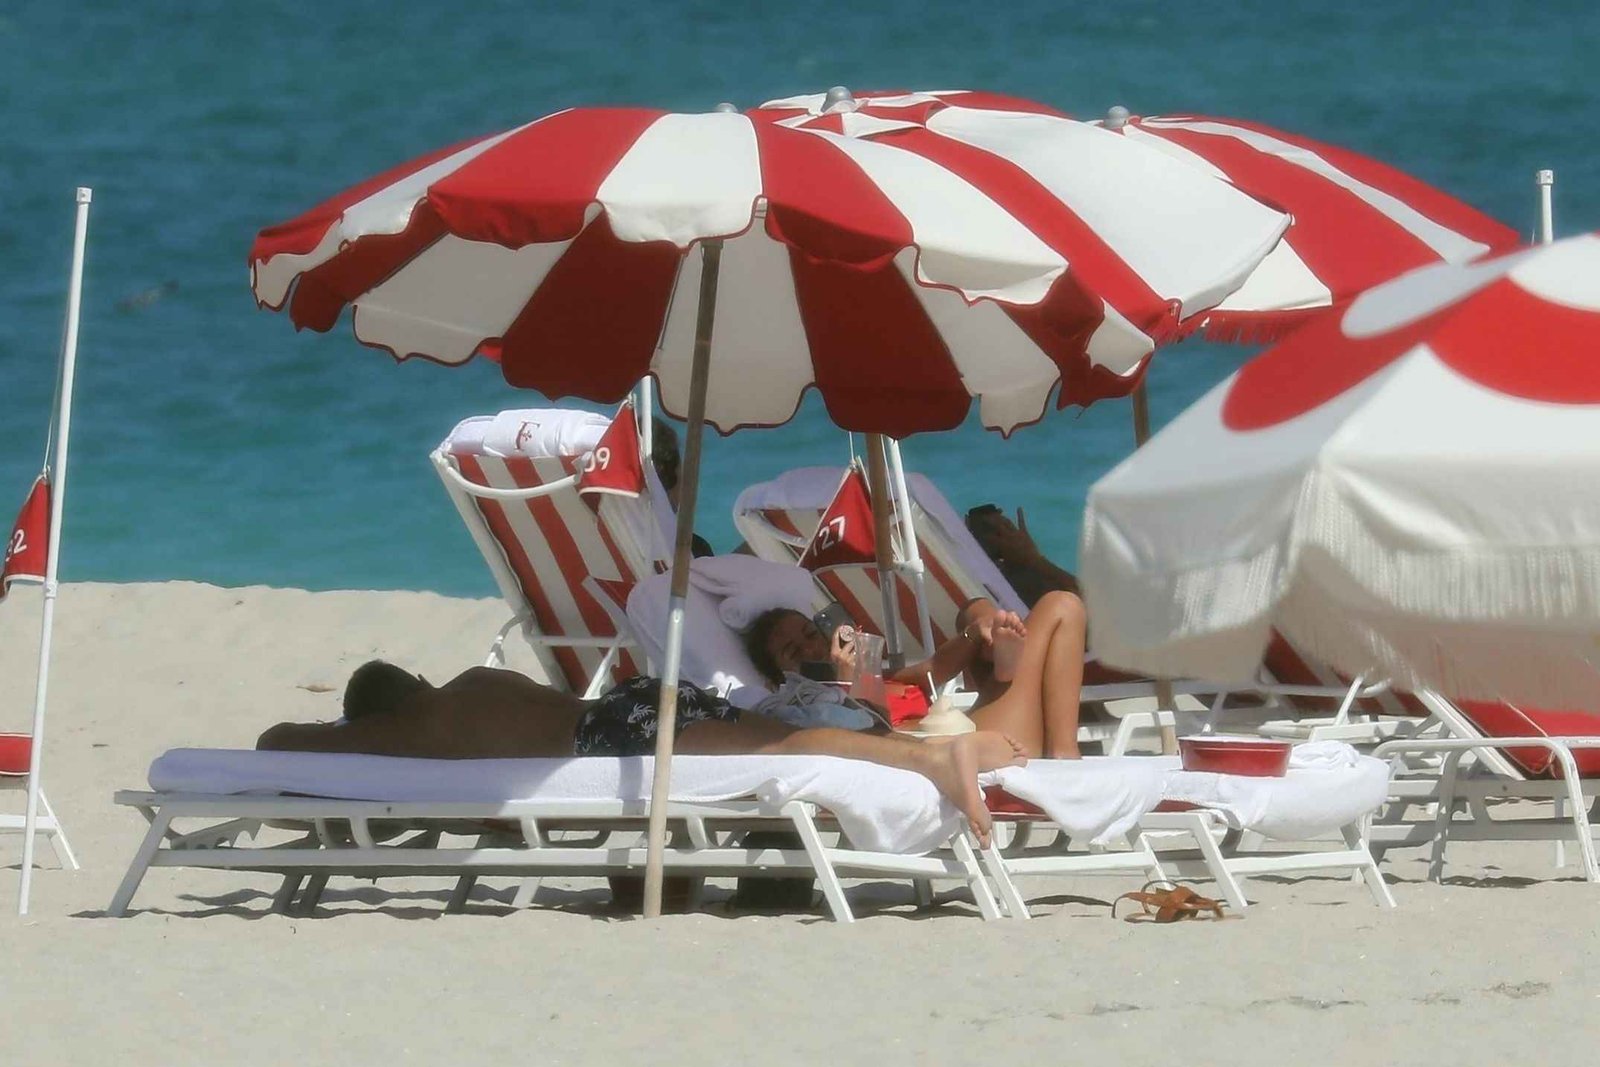 Maddy Burciaga en bikini à Miami Beach